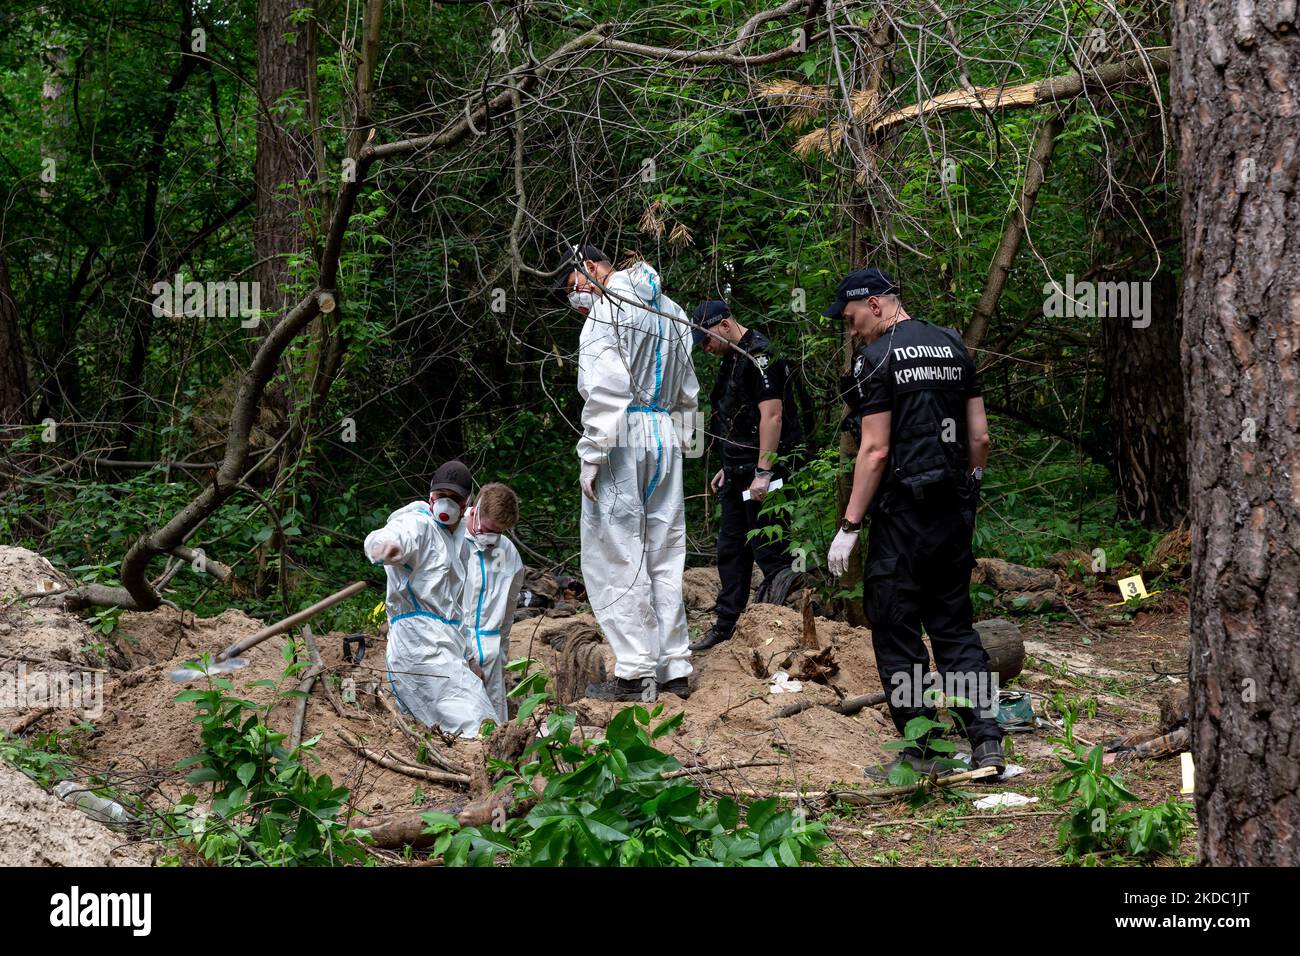 Am 13. Juni 2022 arbeiten ein Aushubteam und eine Polizei in einem Wald in der Nähe von Bucha, Ukraine, um Leichen ukrainischer Zivilisten auszugraben, die von der russischen Armee ermordet wurden. Die Leichen wurden von einer Patrouille der Territorialen Verteidigungskräfte entdeckt und befanden sich in der Nähe von Tranchen, die von der russischen Armee bei der Besetzung des Territoriums errichtet wurden. Aus einem Massengrab wurden sieben Leichen ausgegraben. Einige der Körper haben Anzeichen dafür, dass sie gefesselt und beschossen wurden. Eine Untersuchung wird folgen. (Foto von Dominika Zarzycka/NurPhoto) Stockfoto